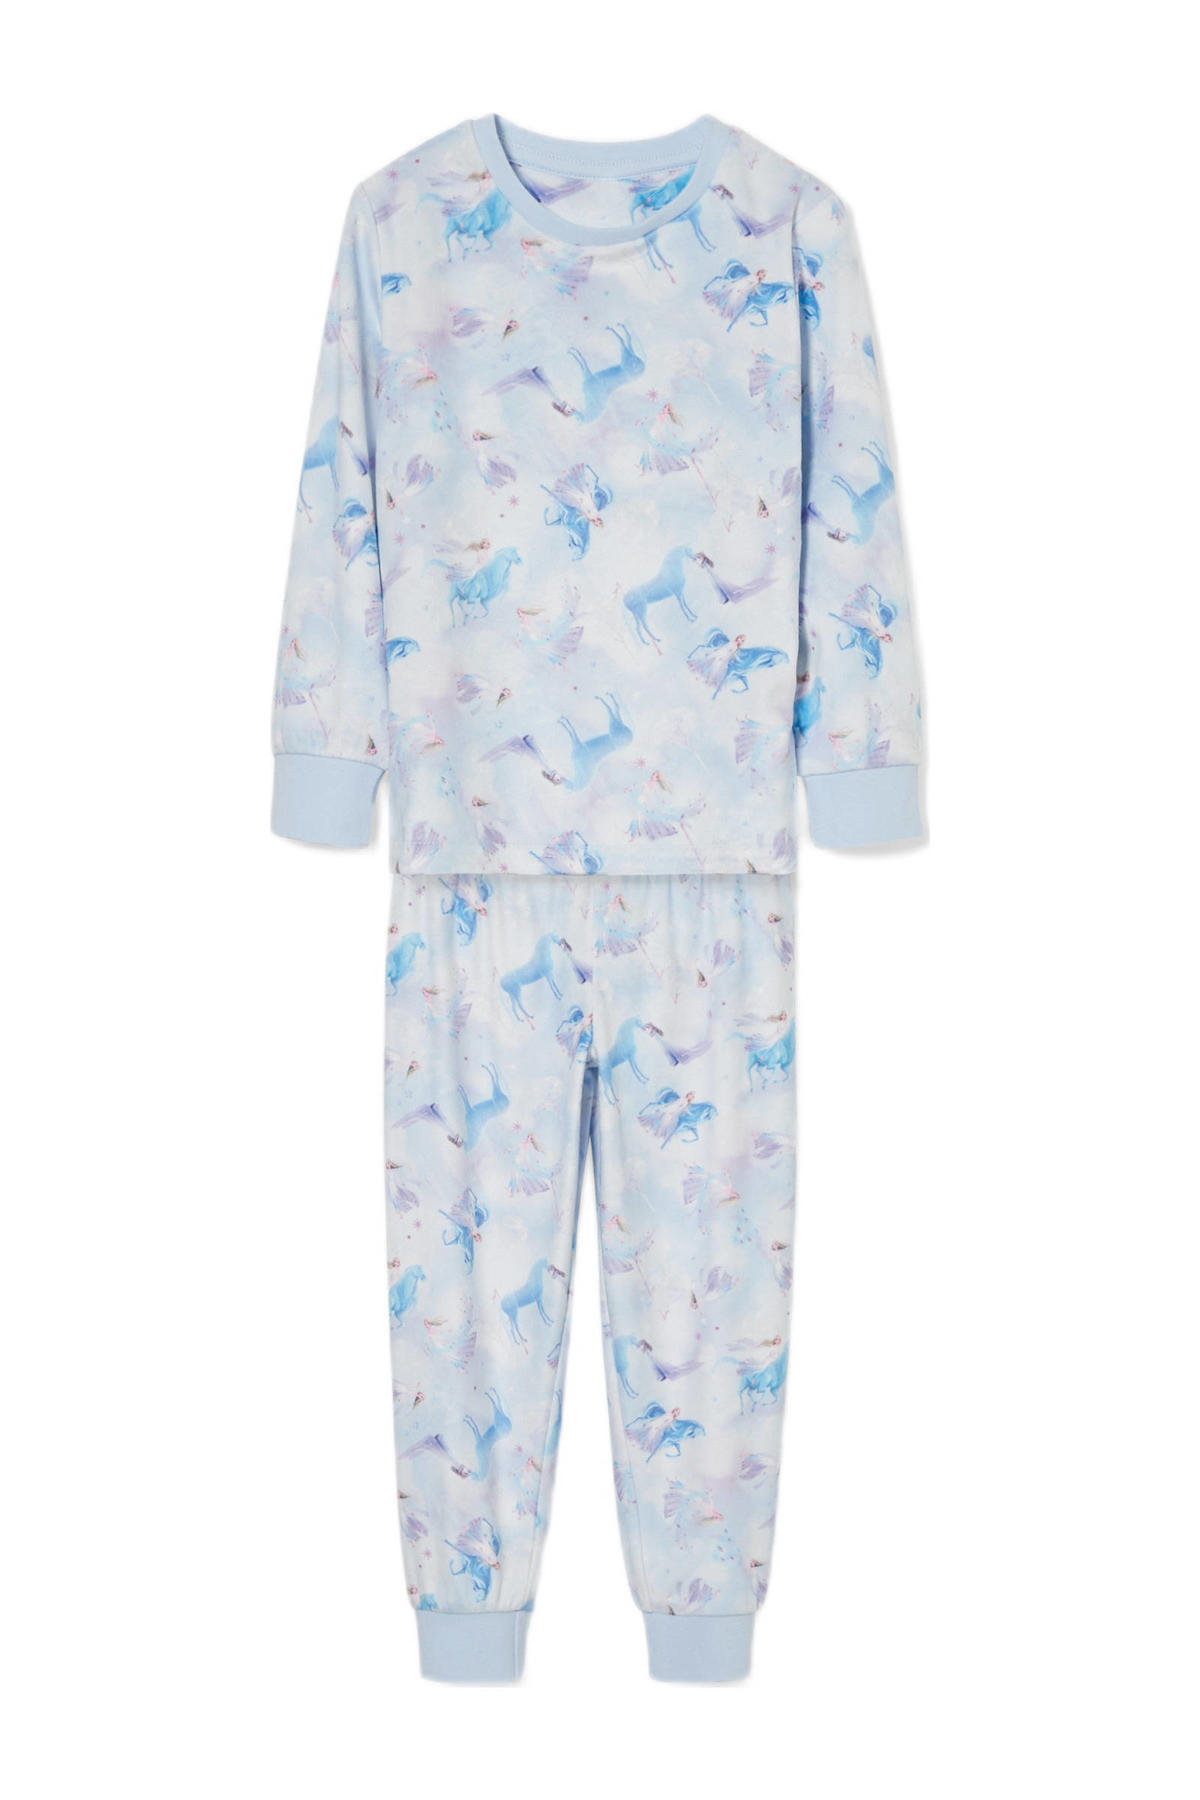 blad pk Bejaarden C&A Frozen pyjama met all over print lichtblauw | wehkamp